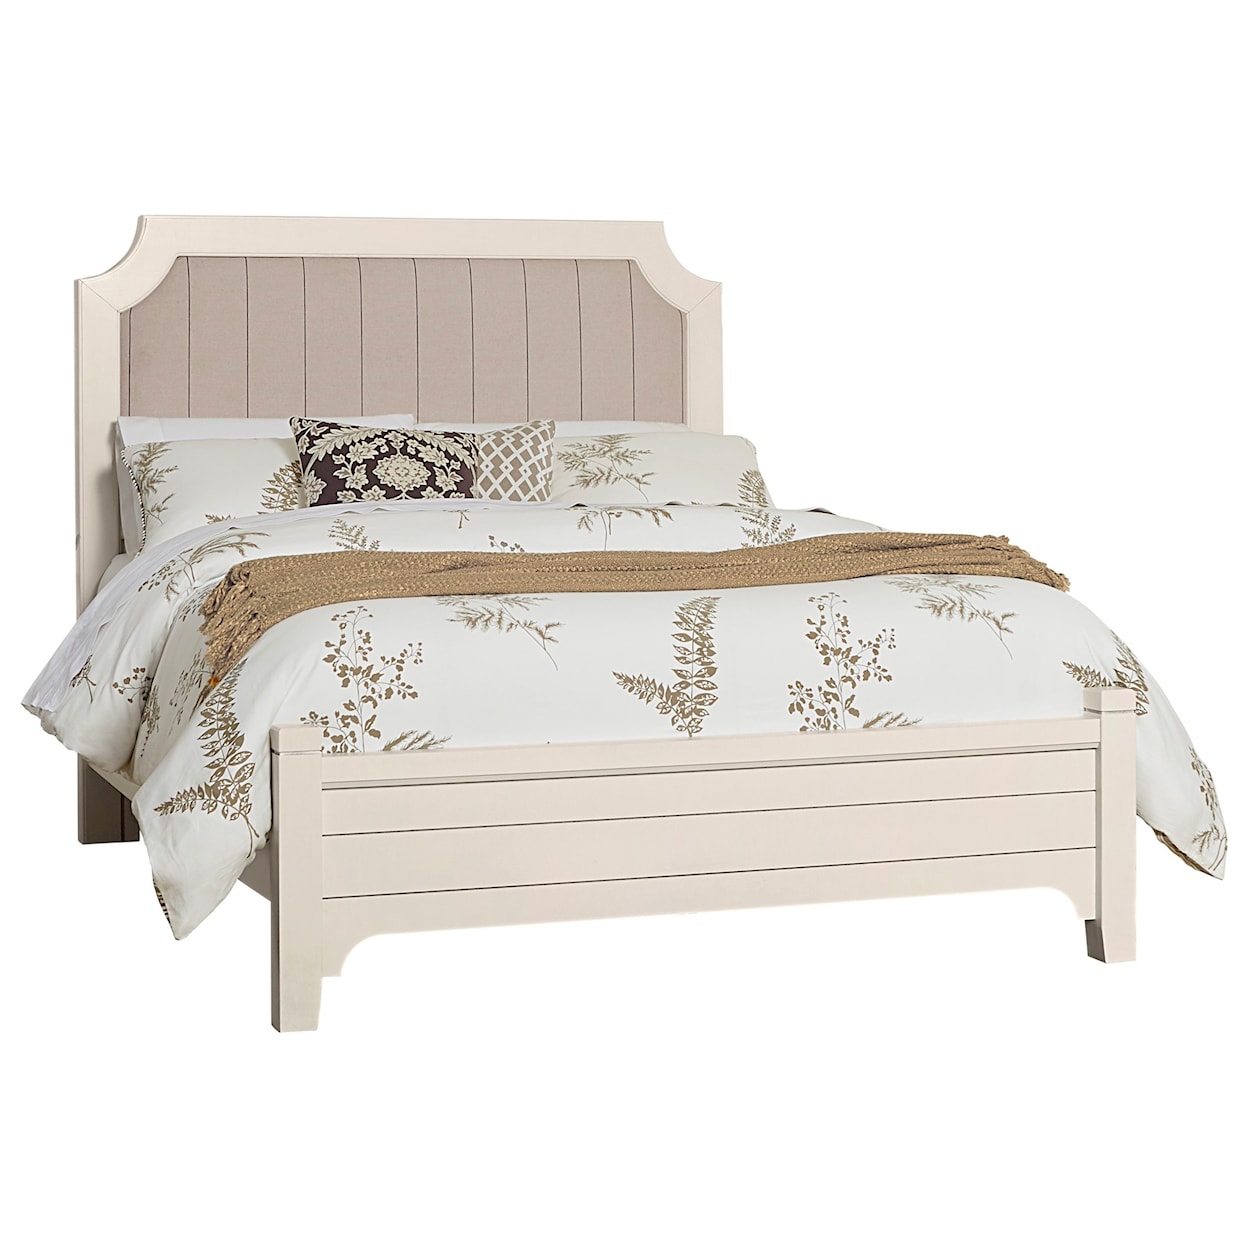 Vaughan-Bassett Bungalow Queen Upholstered Bed